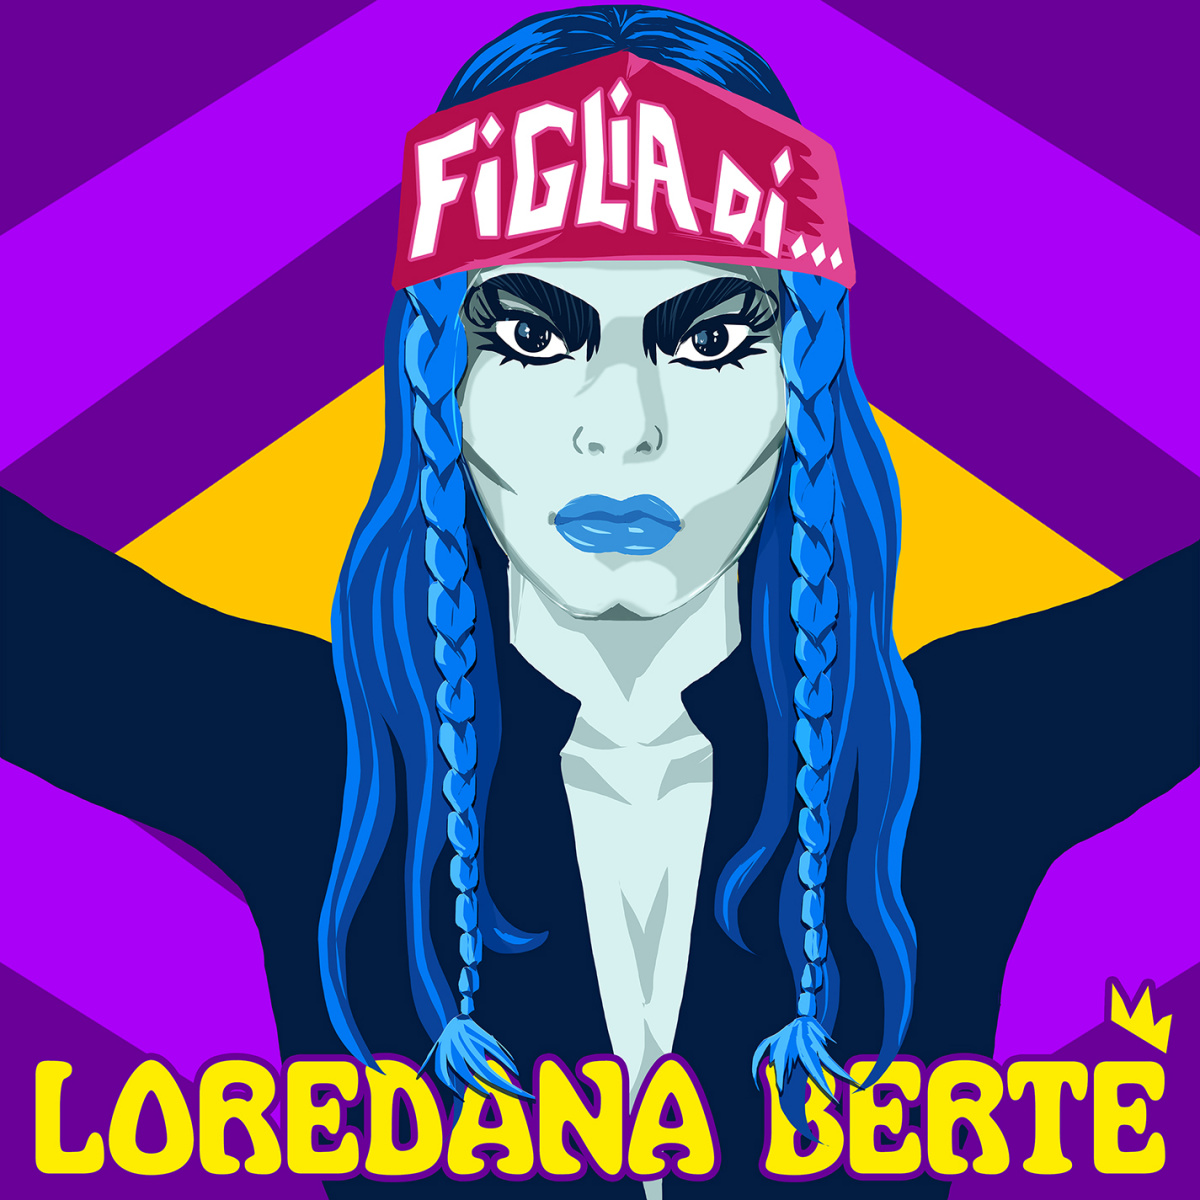 Loredana Bertè - Figlia di... piano sheet music